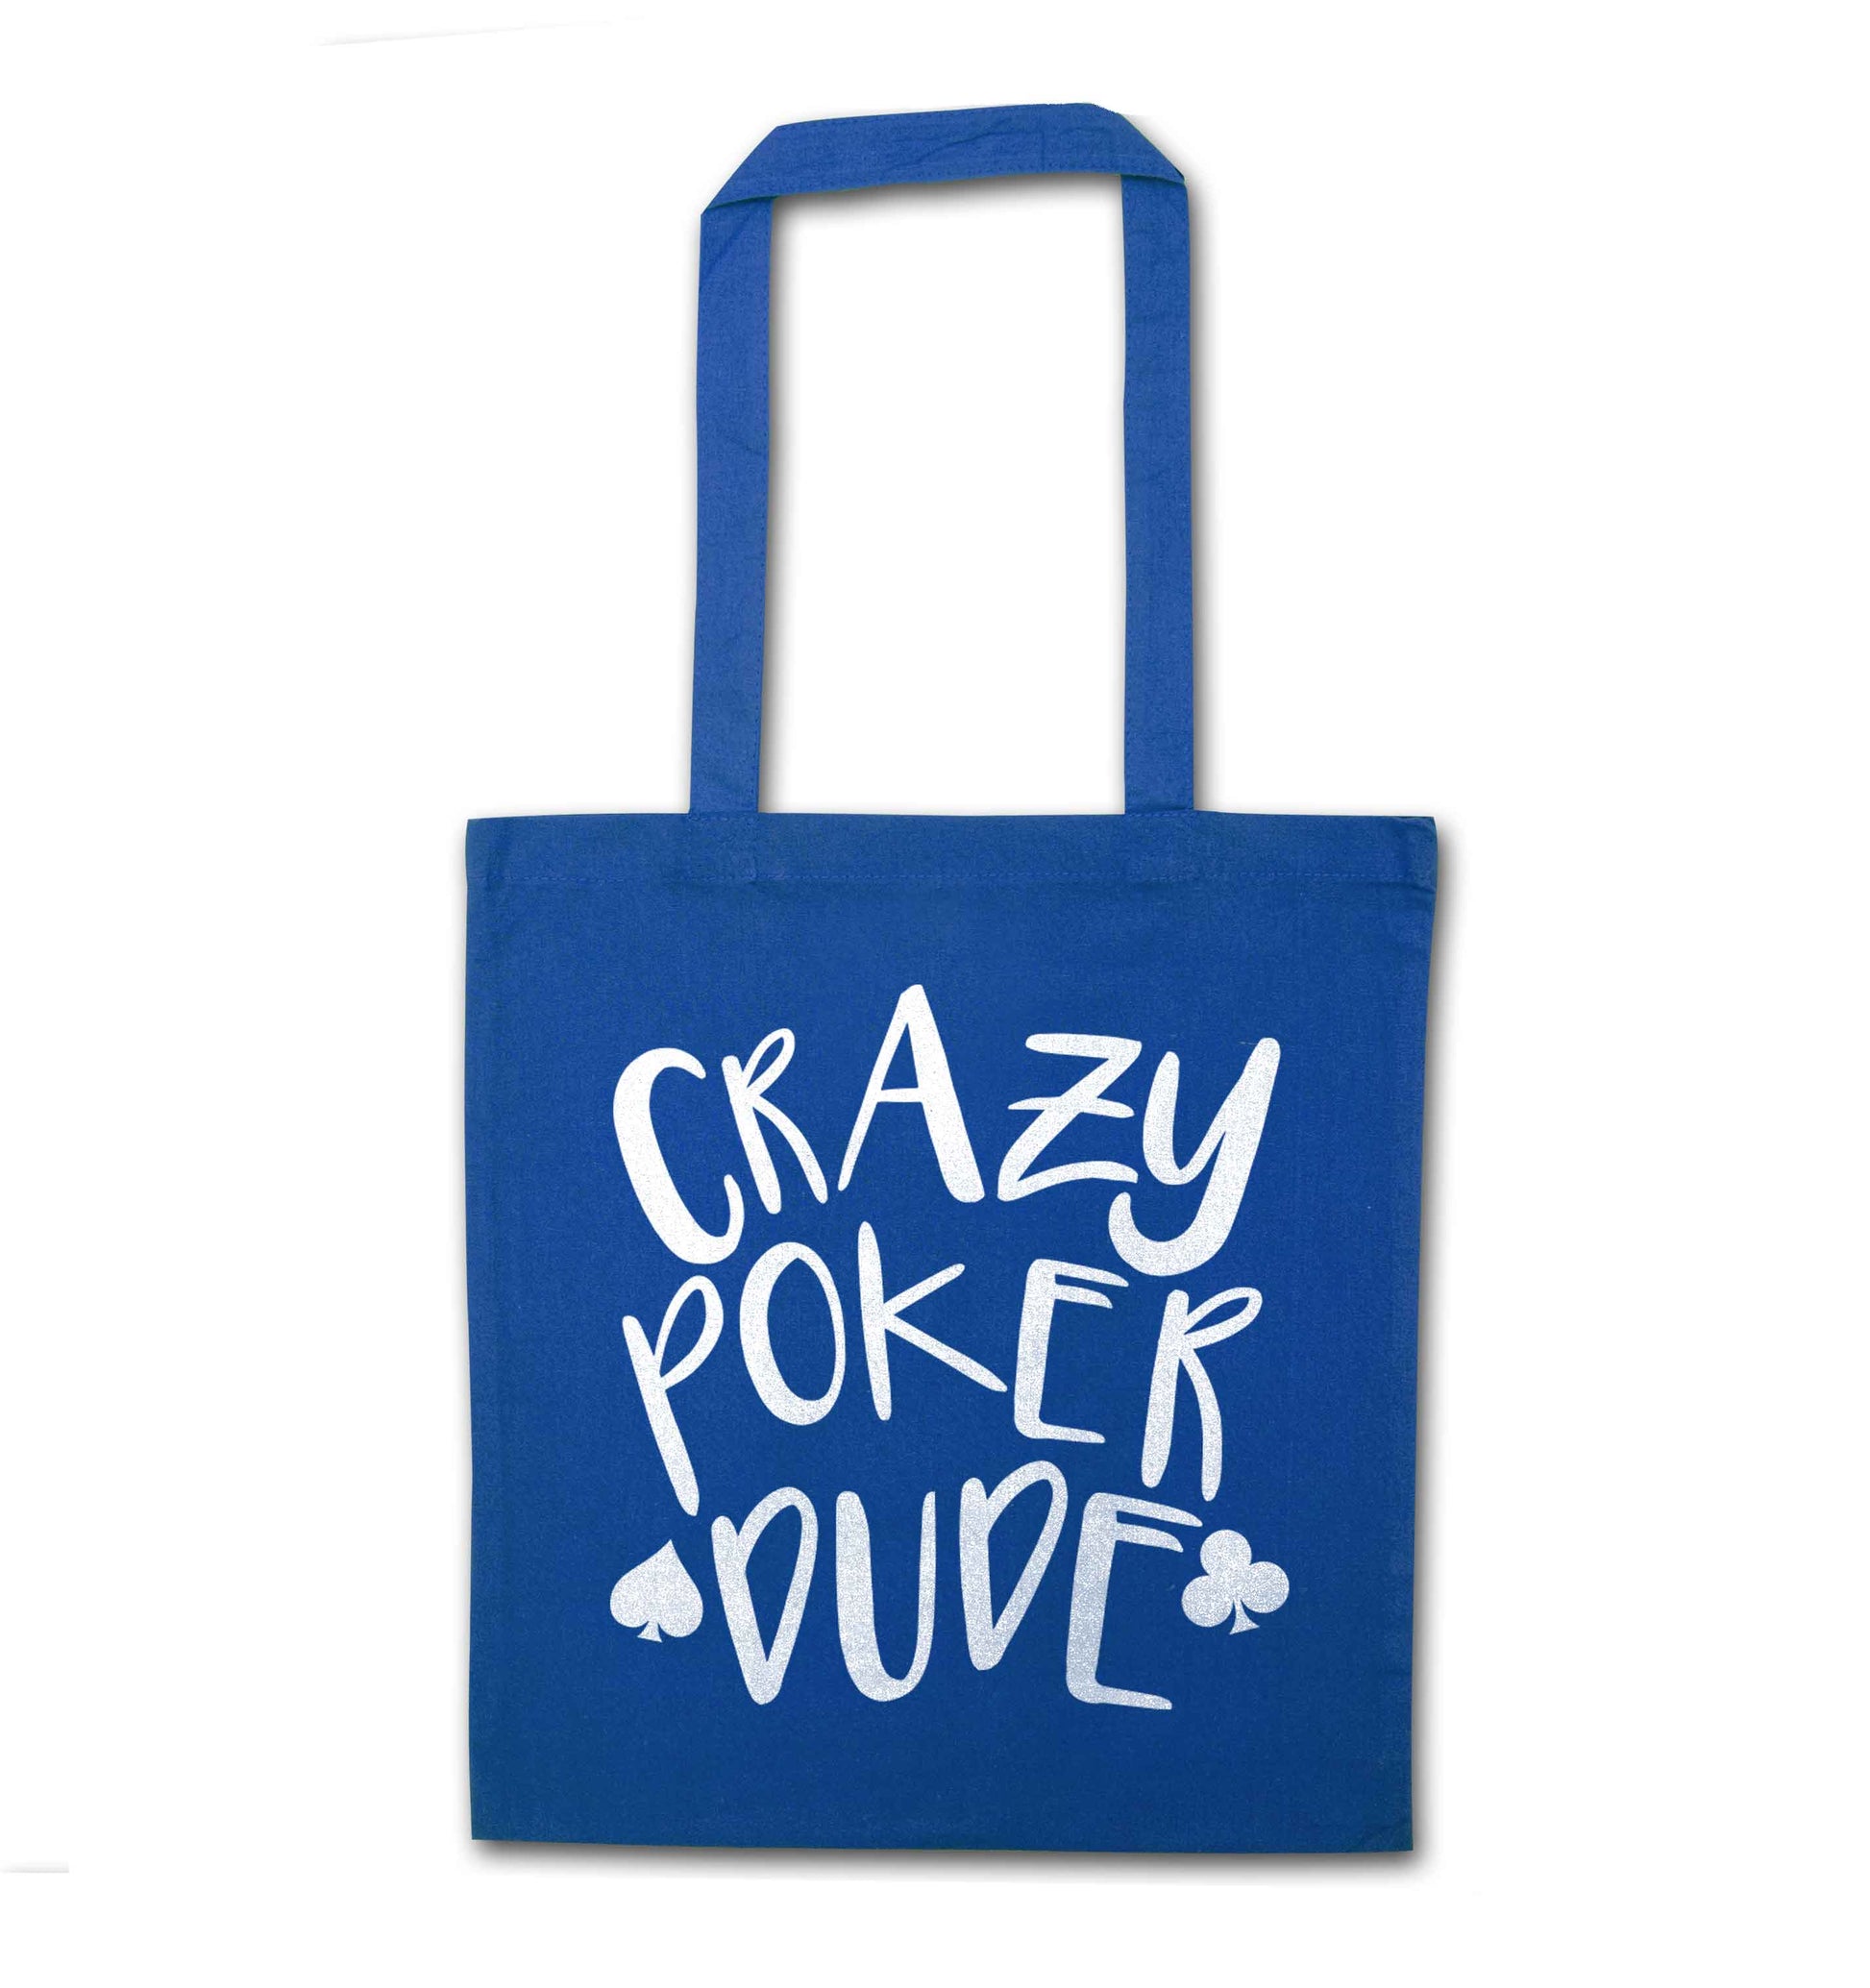 Crazy poker dude blue tote bag